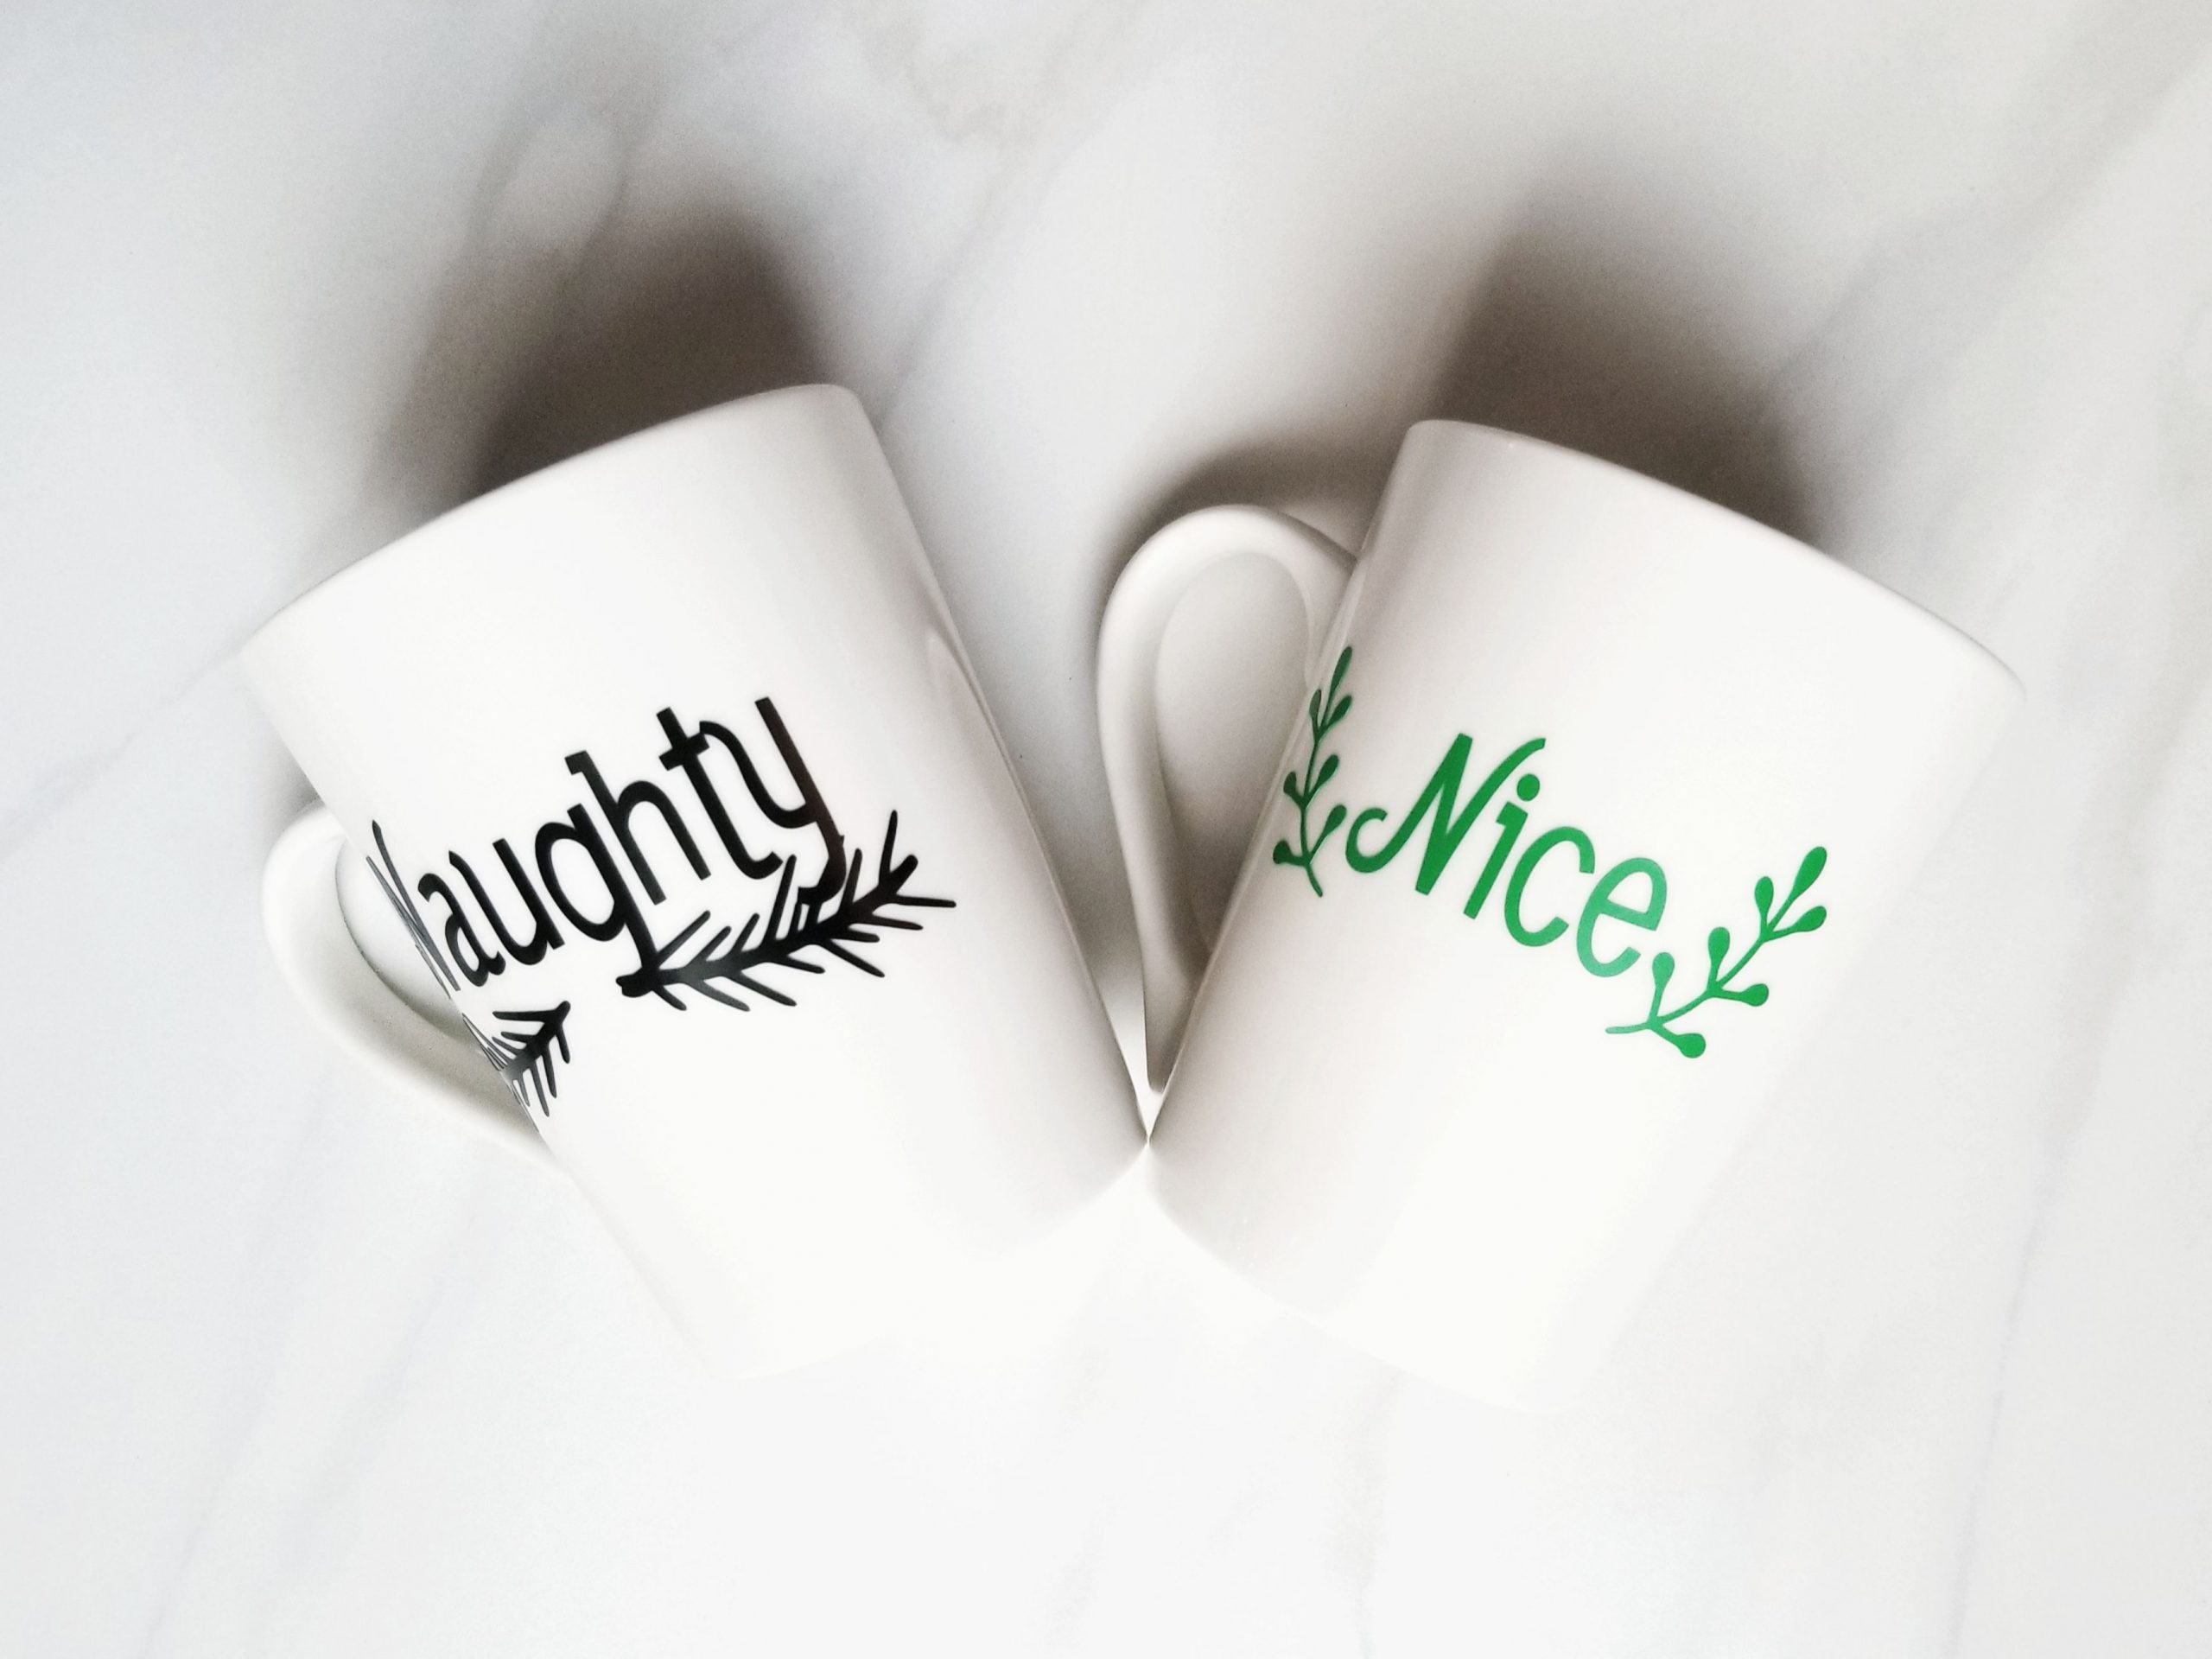 DIY Naughty and Nice Mugs